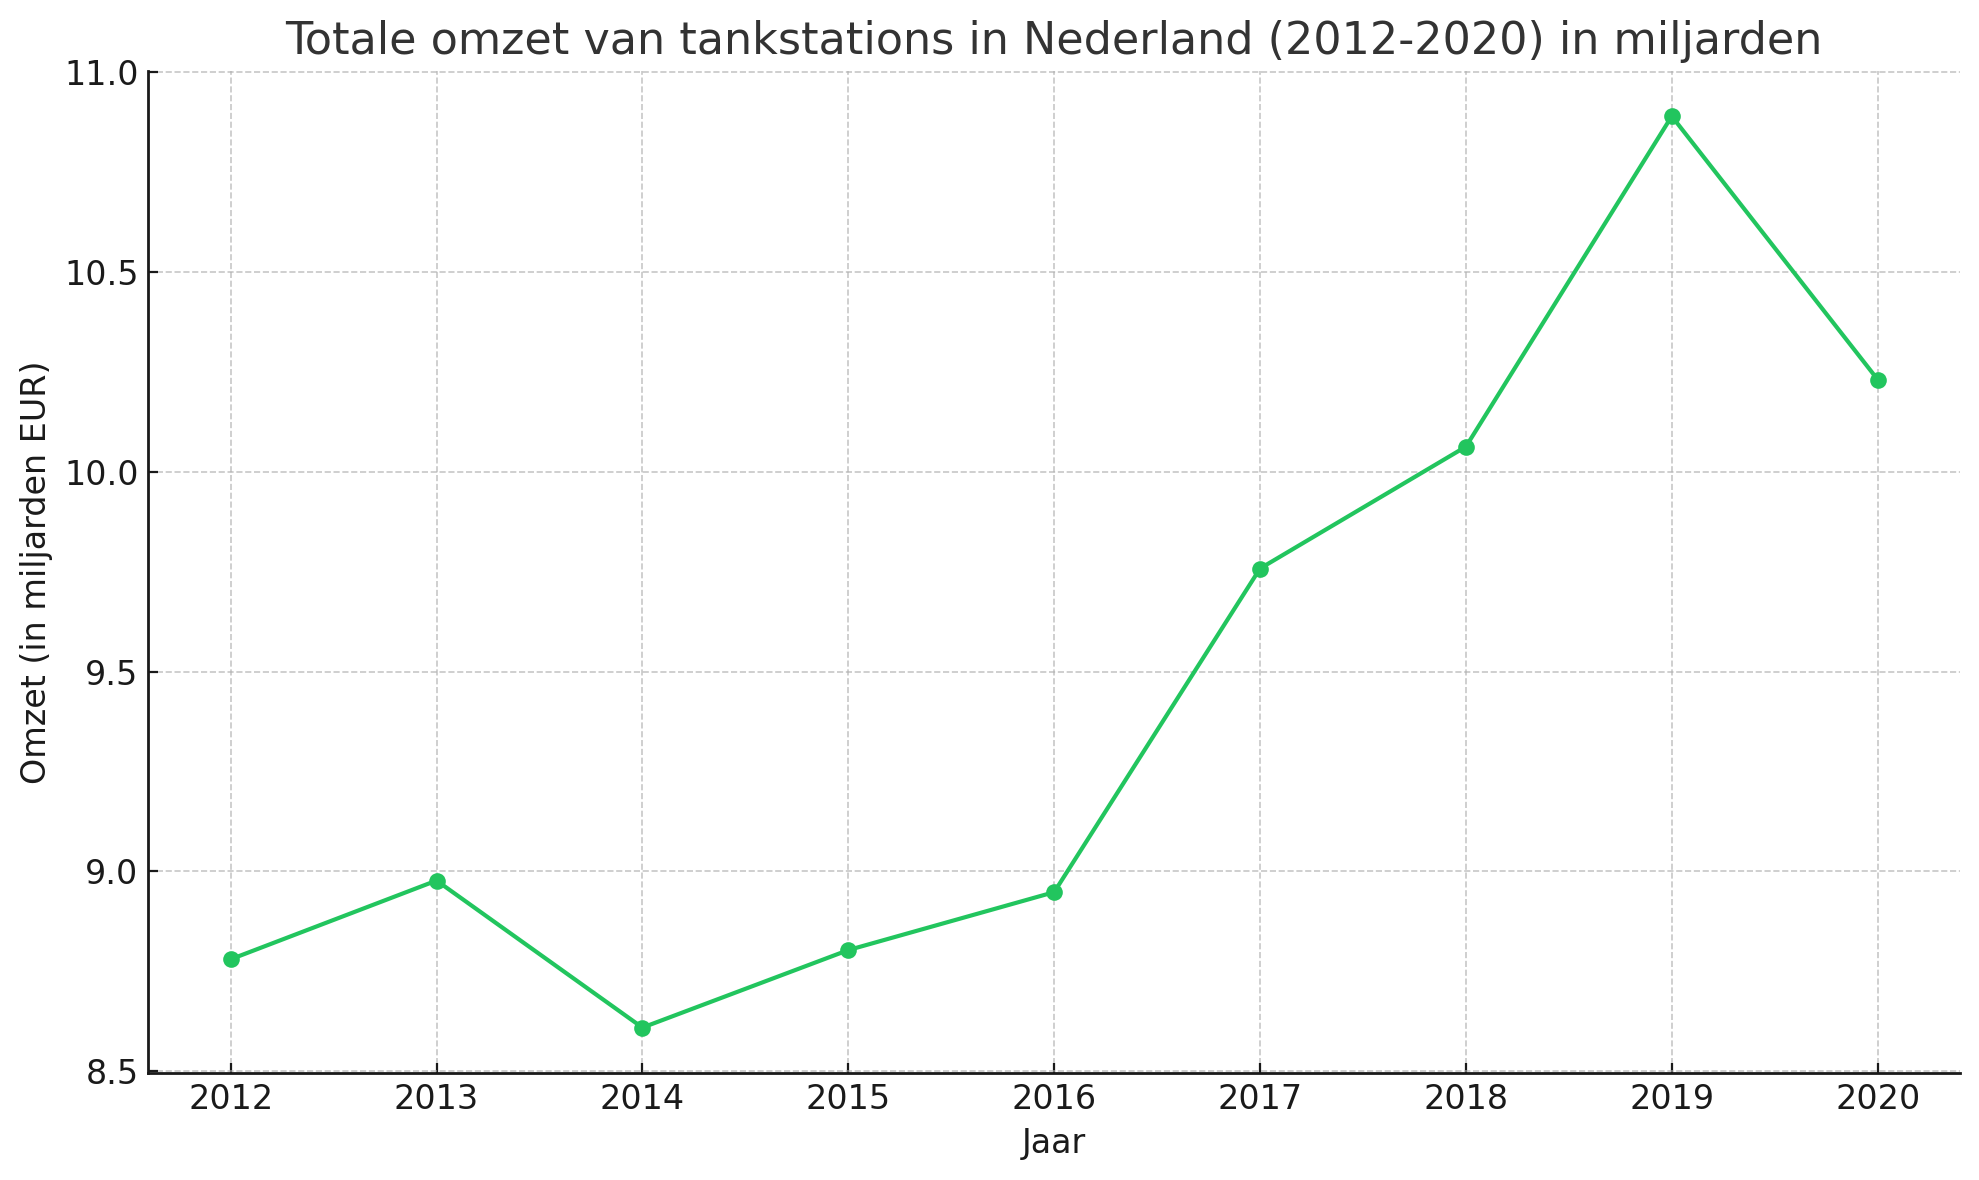 Totale omzet van tankstations in Nederland in miljarden